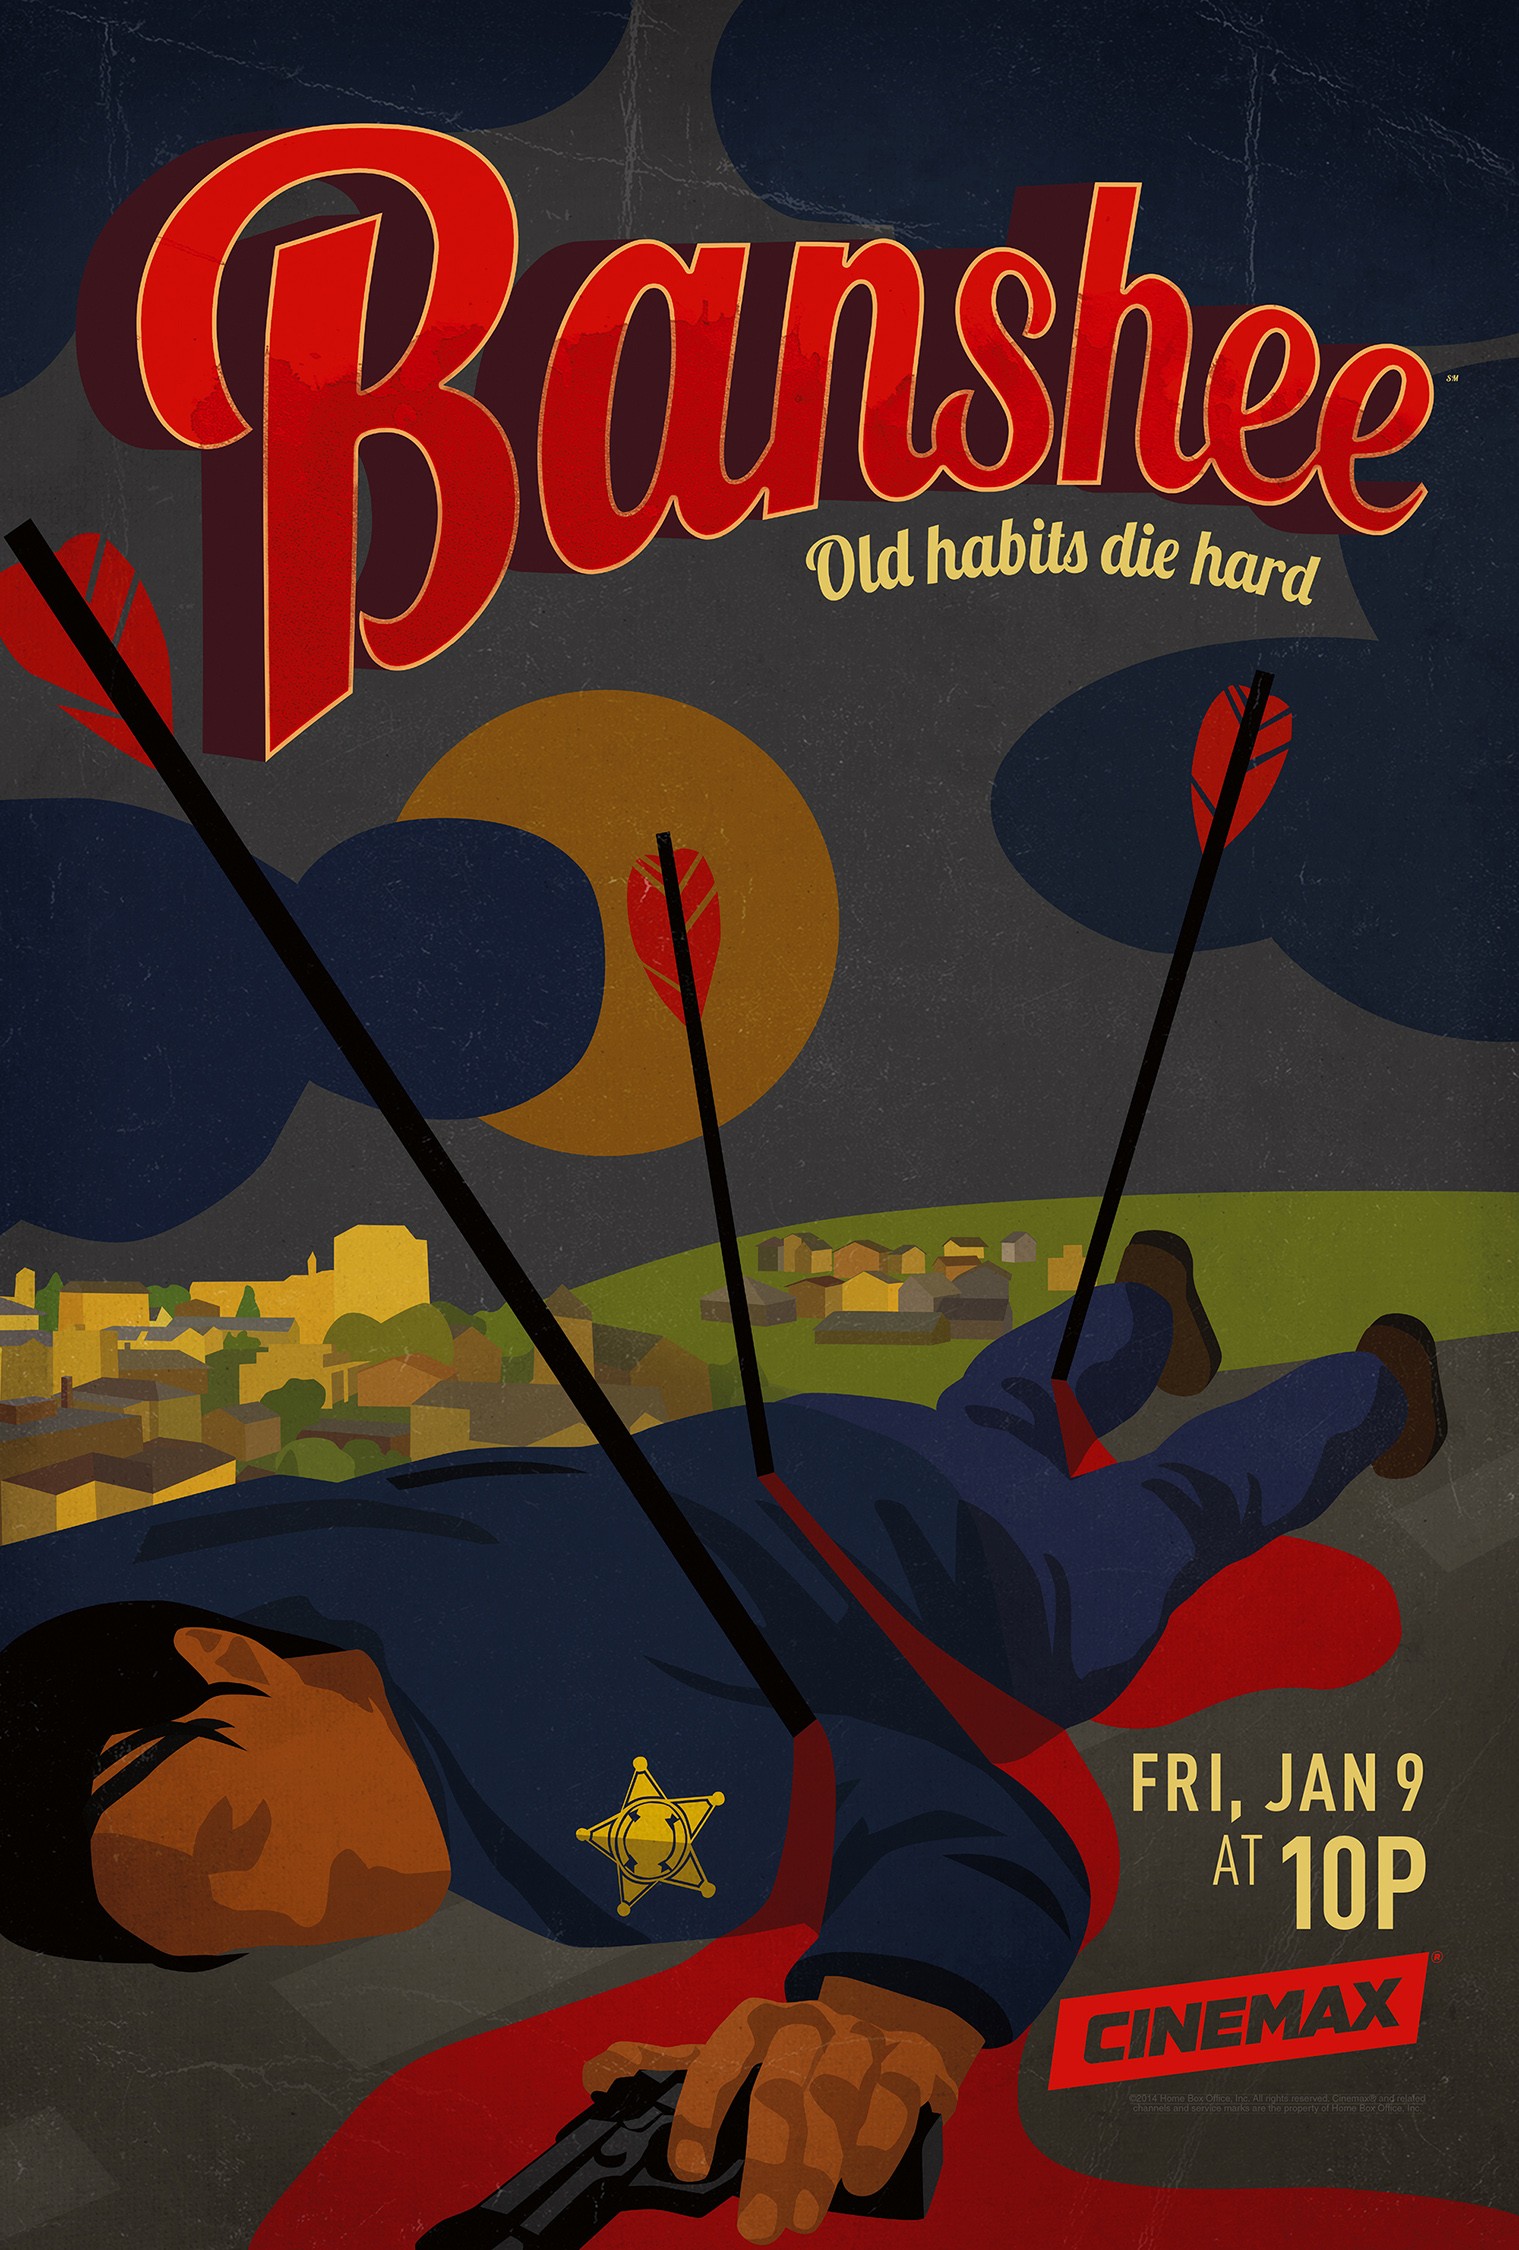 Mega Sized TV Poster Image for Banshee (#7 of 18)